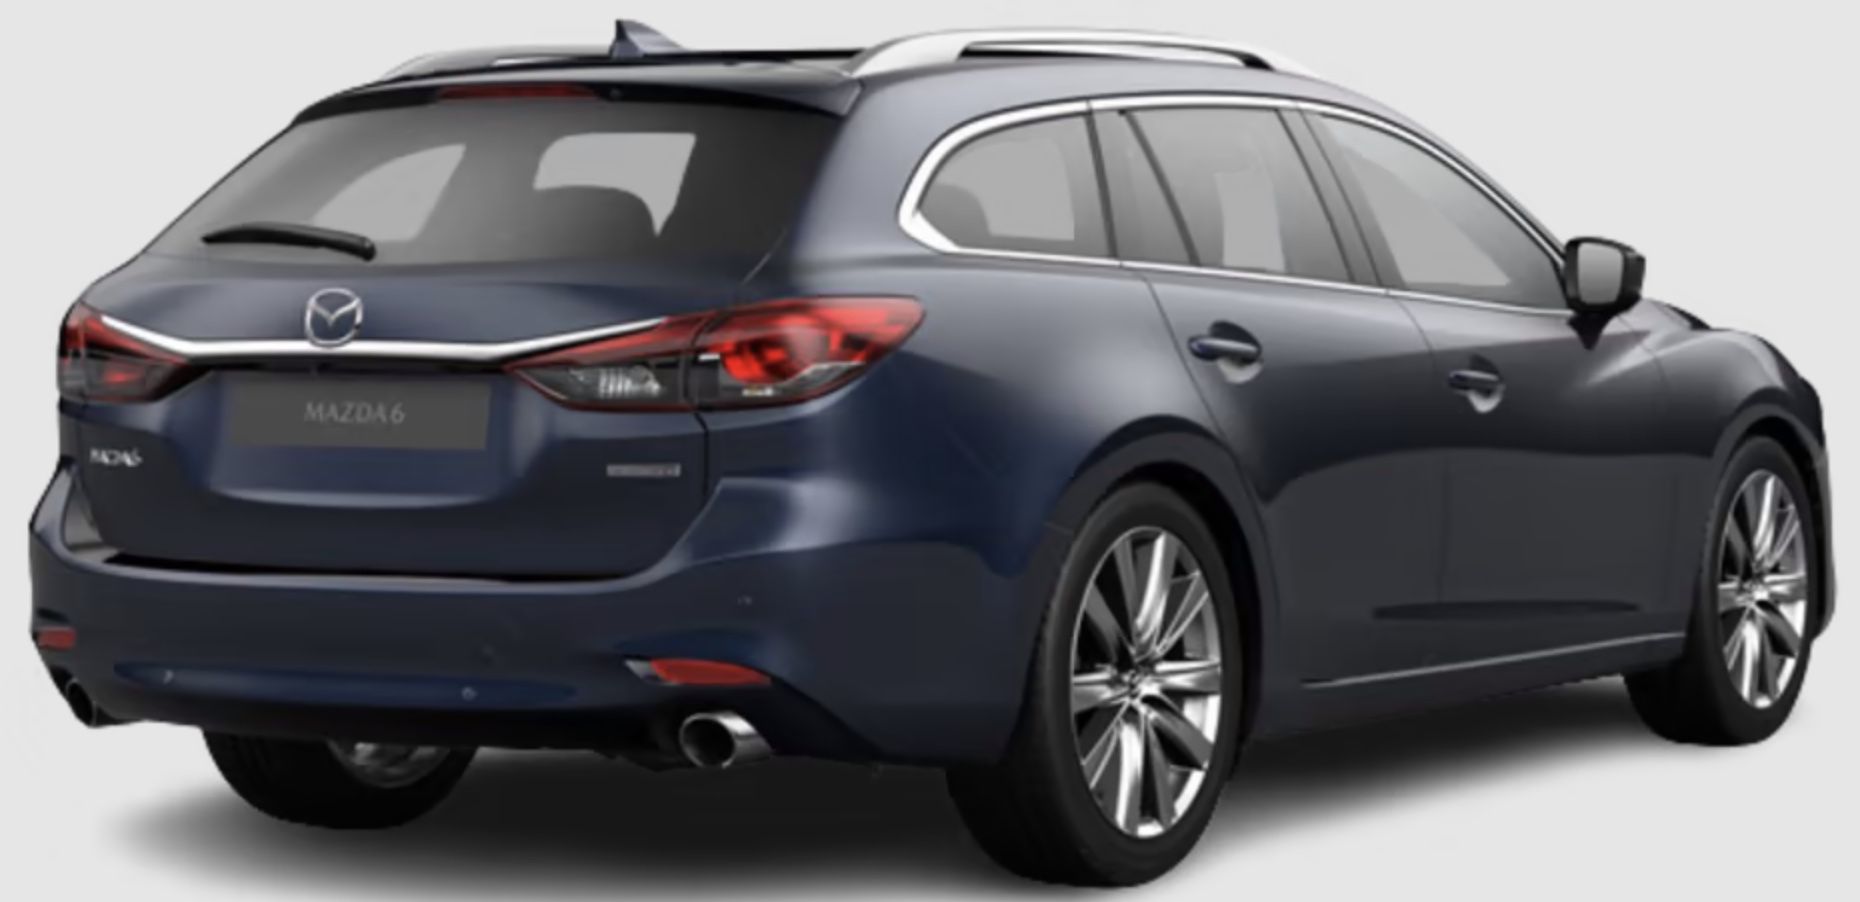 Privat: Mazda6 Kombi 2.5 Skyactiv G Sports Line mit 194 PS für 229€ mtl.